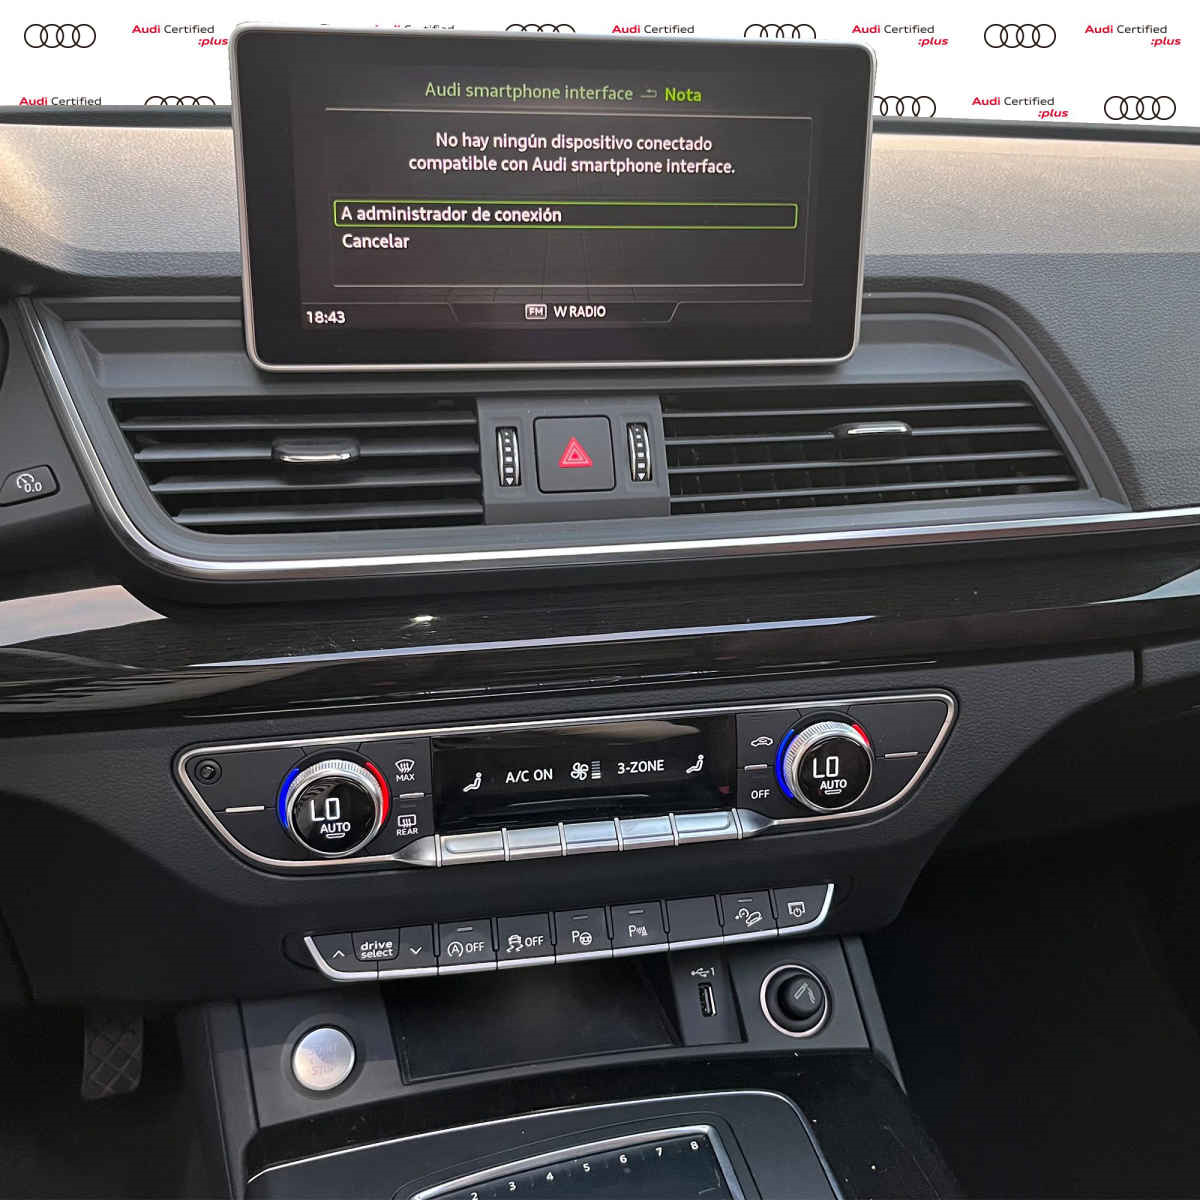 Audi Q5 2019